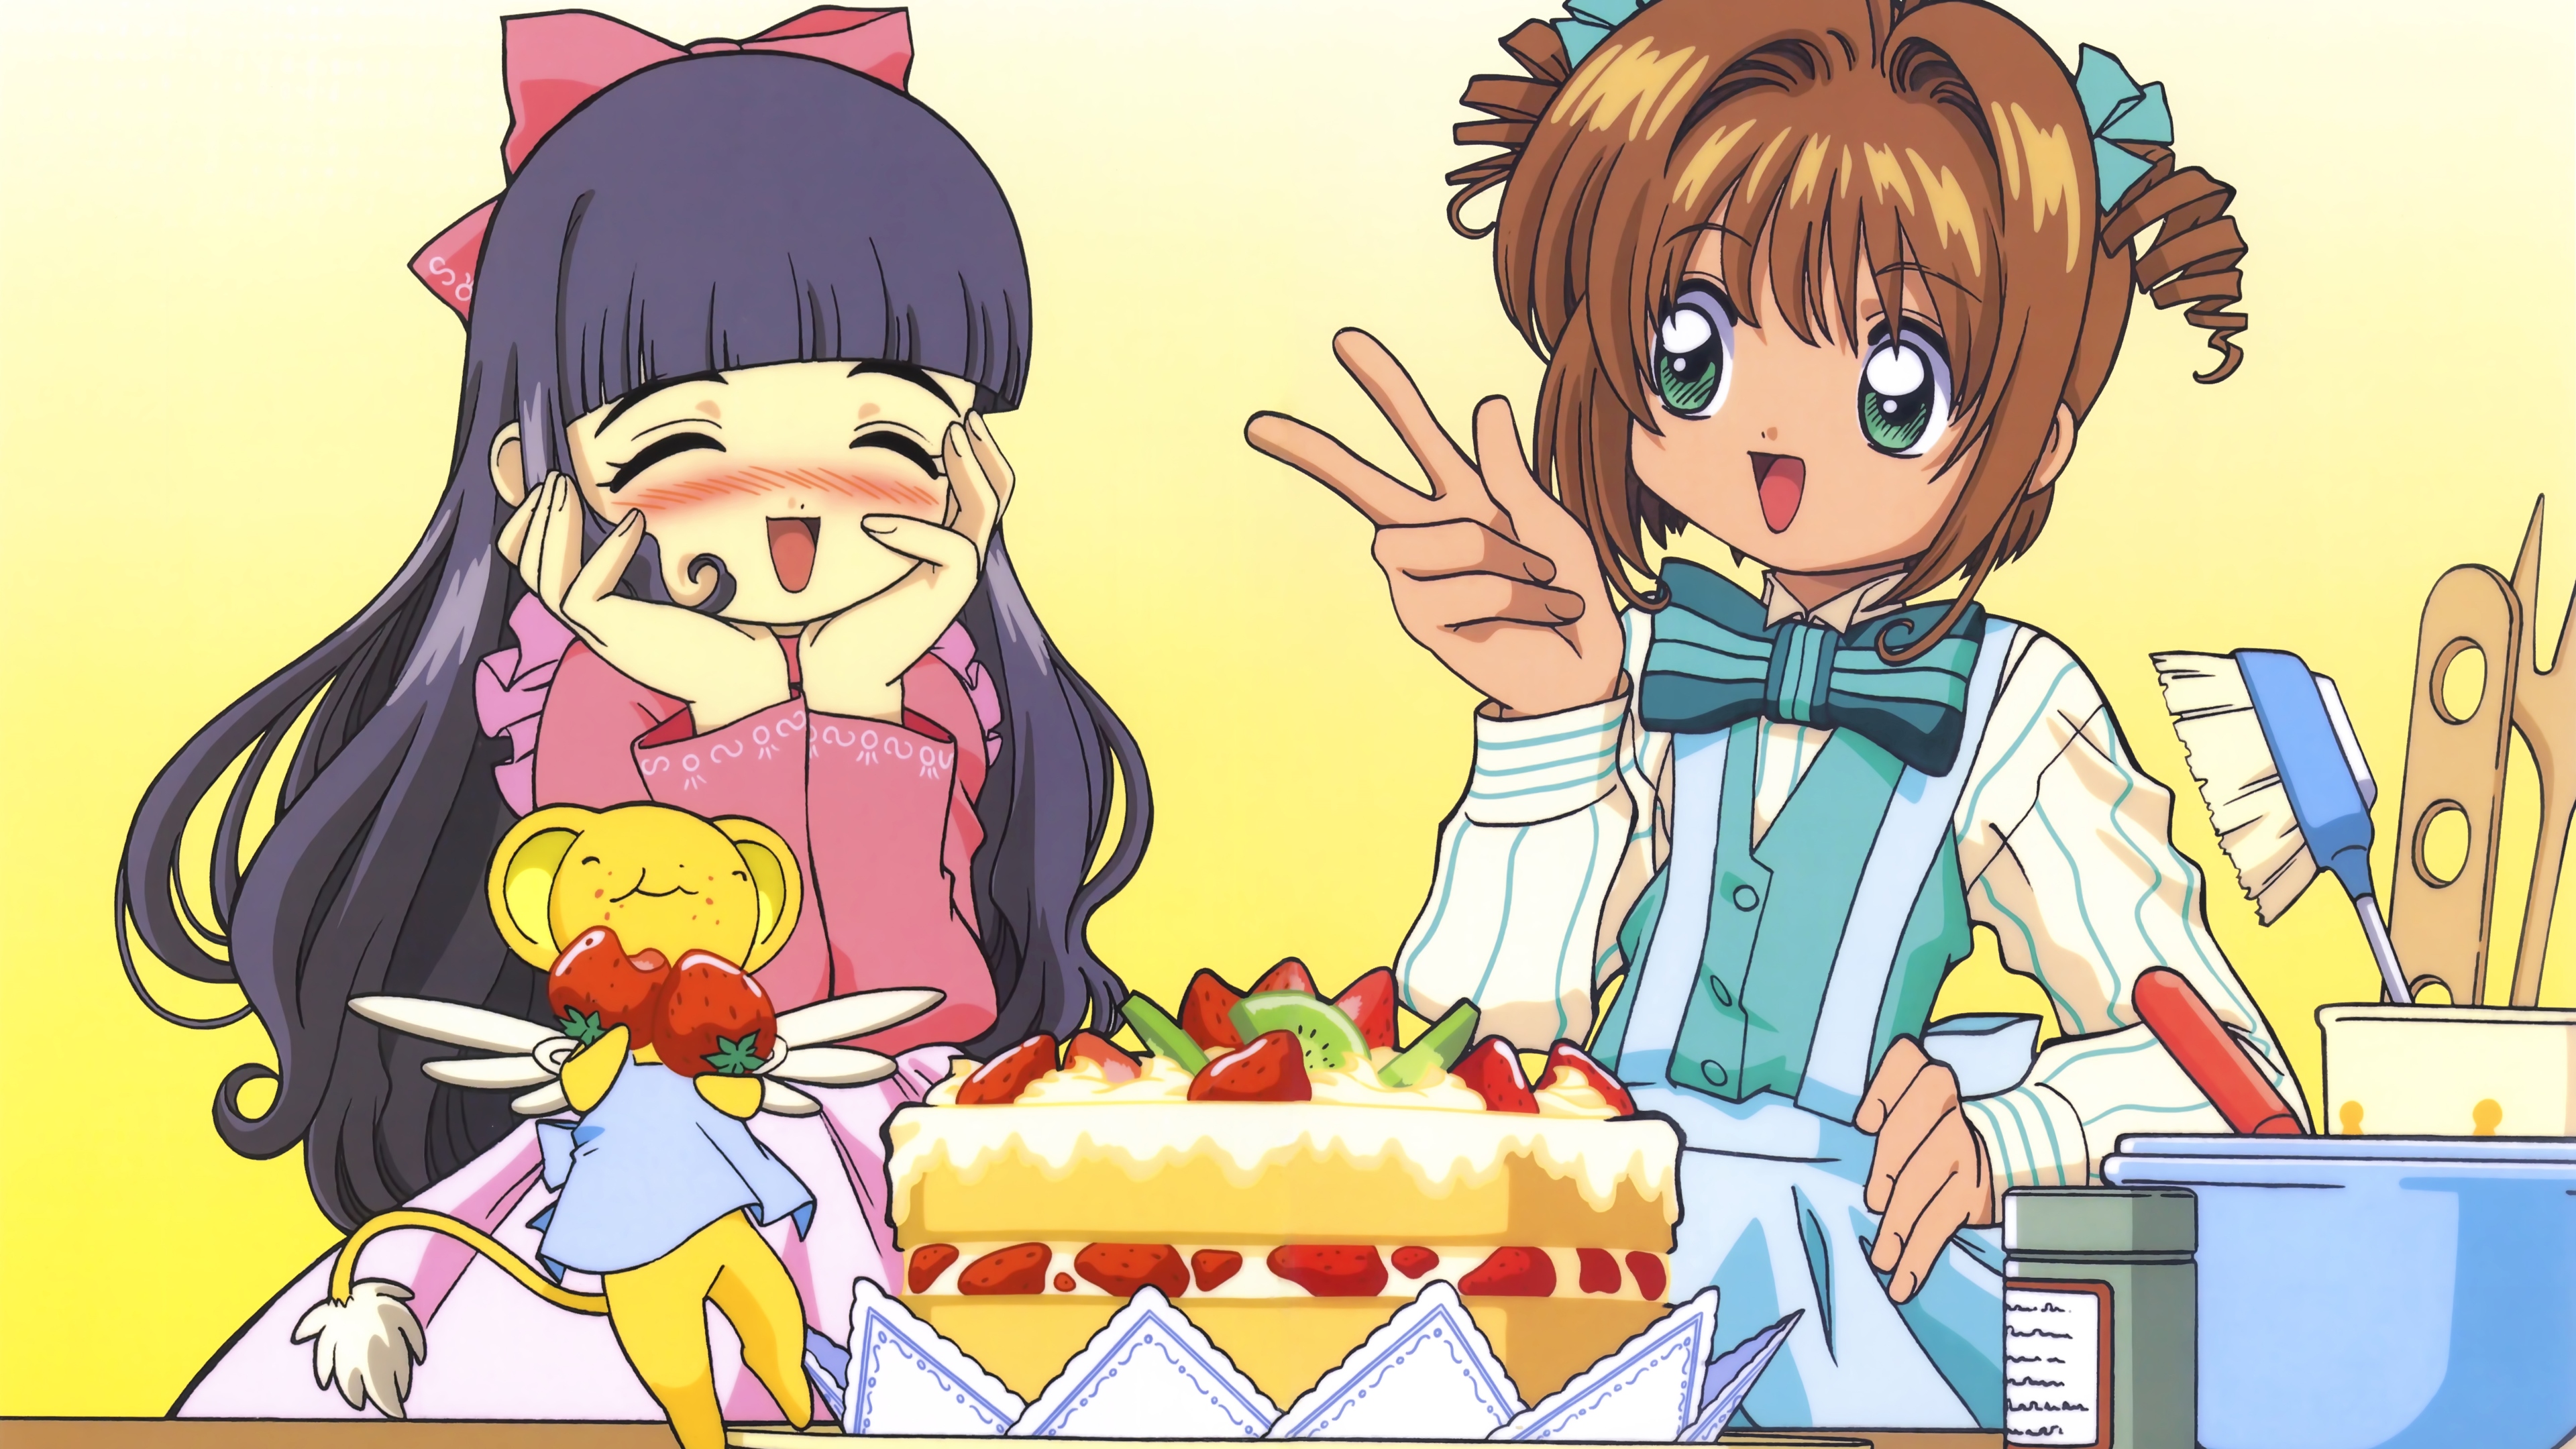 Anime 3840x2160 Cardcaptor Sakura Sakura Kinomoto magical girls anime girls 4K blushing peace sign closed eyes bow tie cake fruit apron